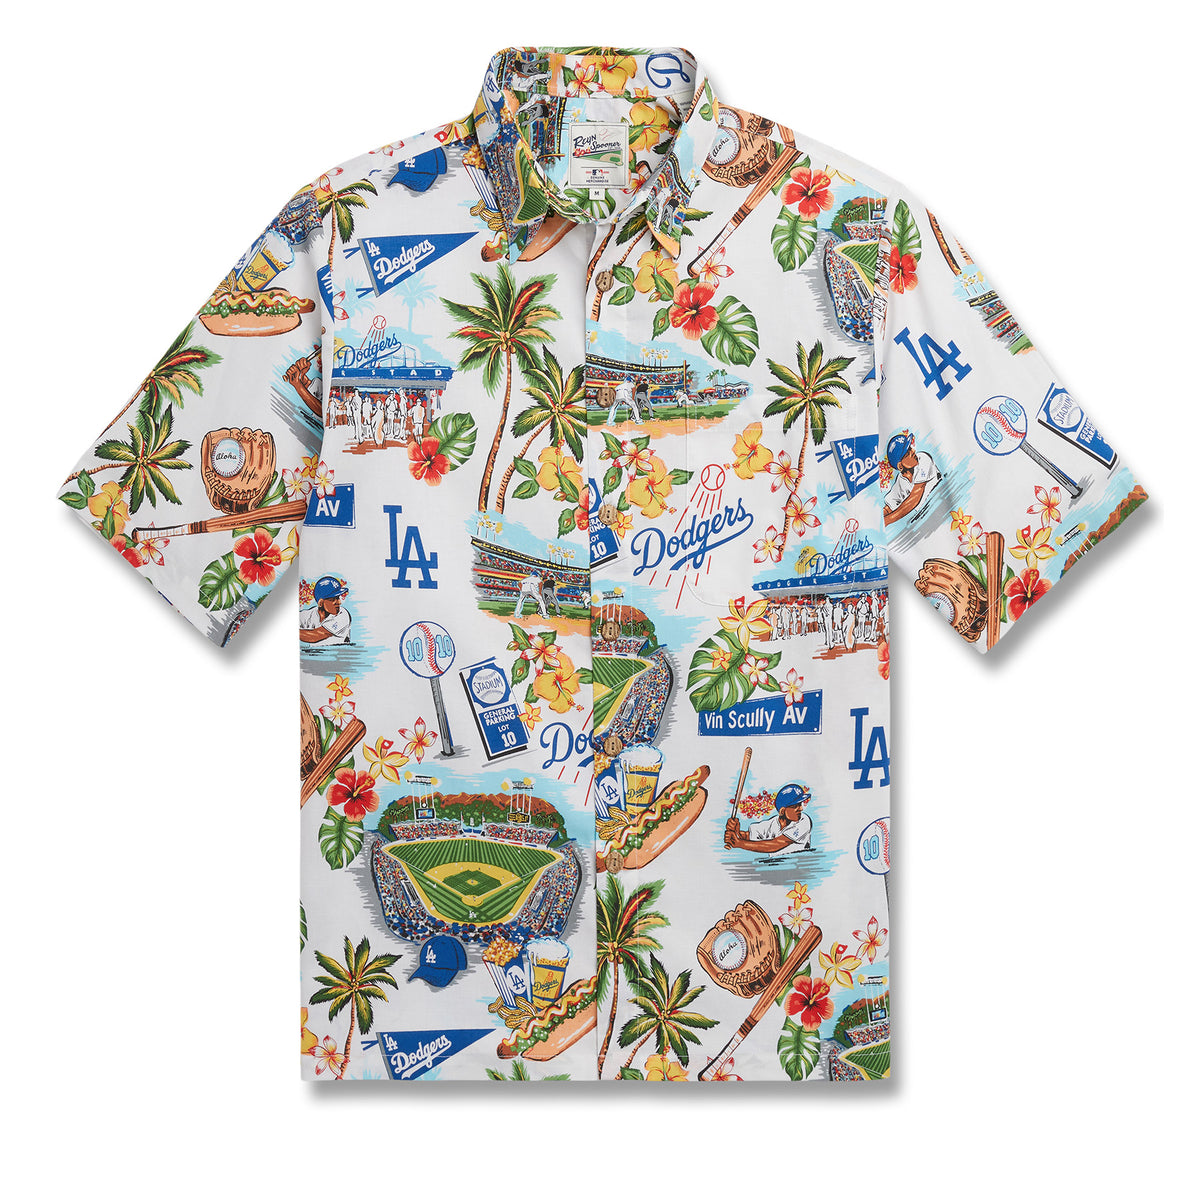 Beach Shirt 2020 World Series Champions Los Angeles Dodgers Hawaiian Shirt  For Men Women - Bunbotee